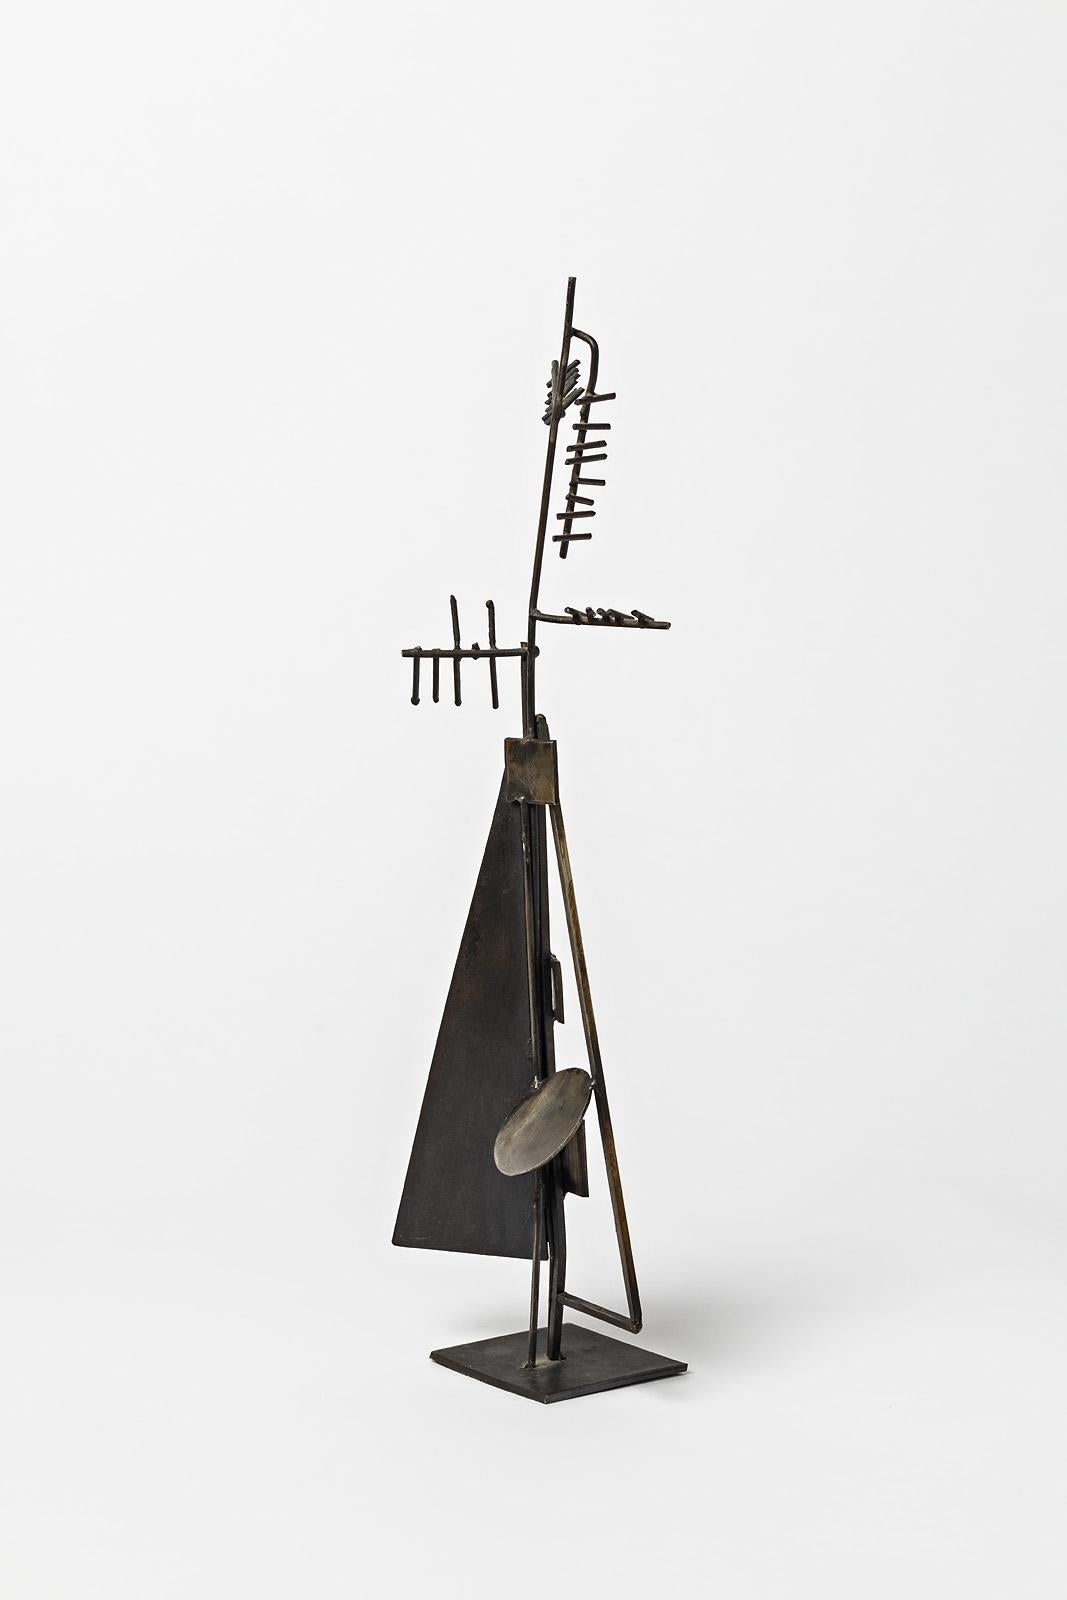 Alain Douillard

Berühmter französischer abstrakter Bildhauer aus Metall, um 1975,

Mitte des 20. Jahrhunderts Kunst Skulptur

Schwarze abstrakte Freiform des Künstlers, signiert am Sockel

Perfekte Originalbedingungen

Provenienz: